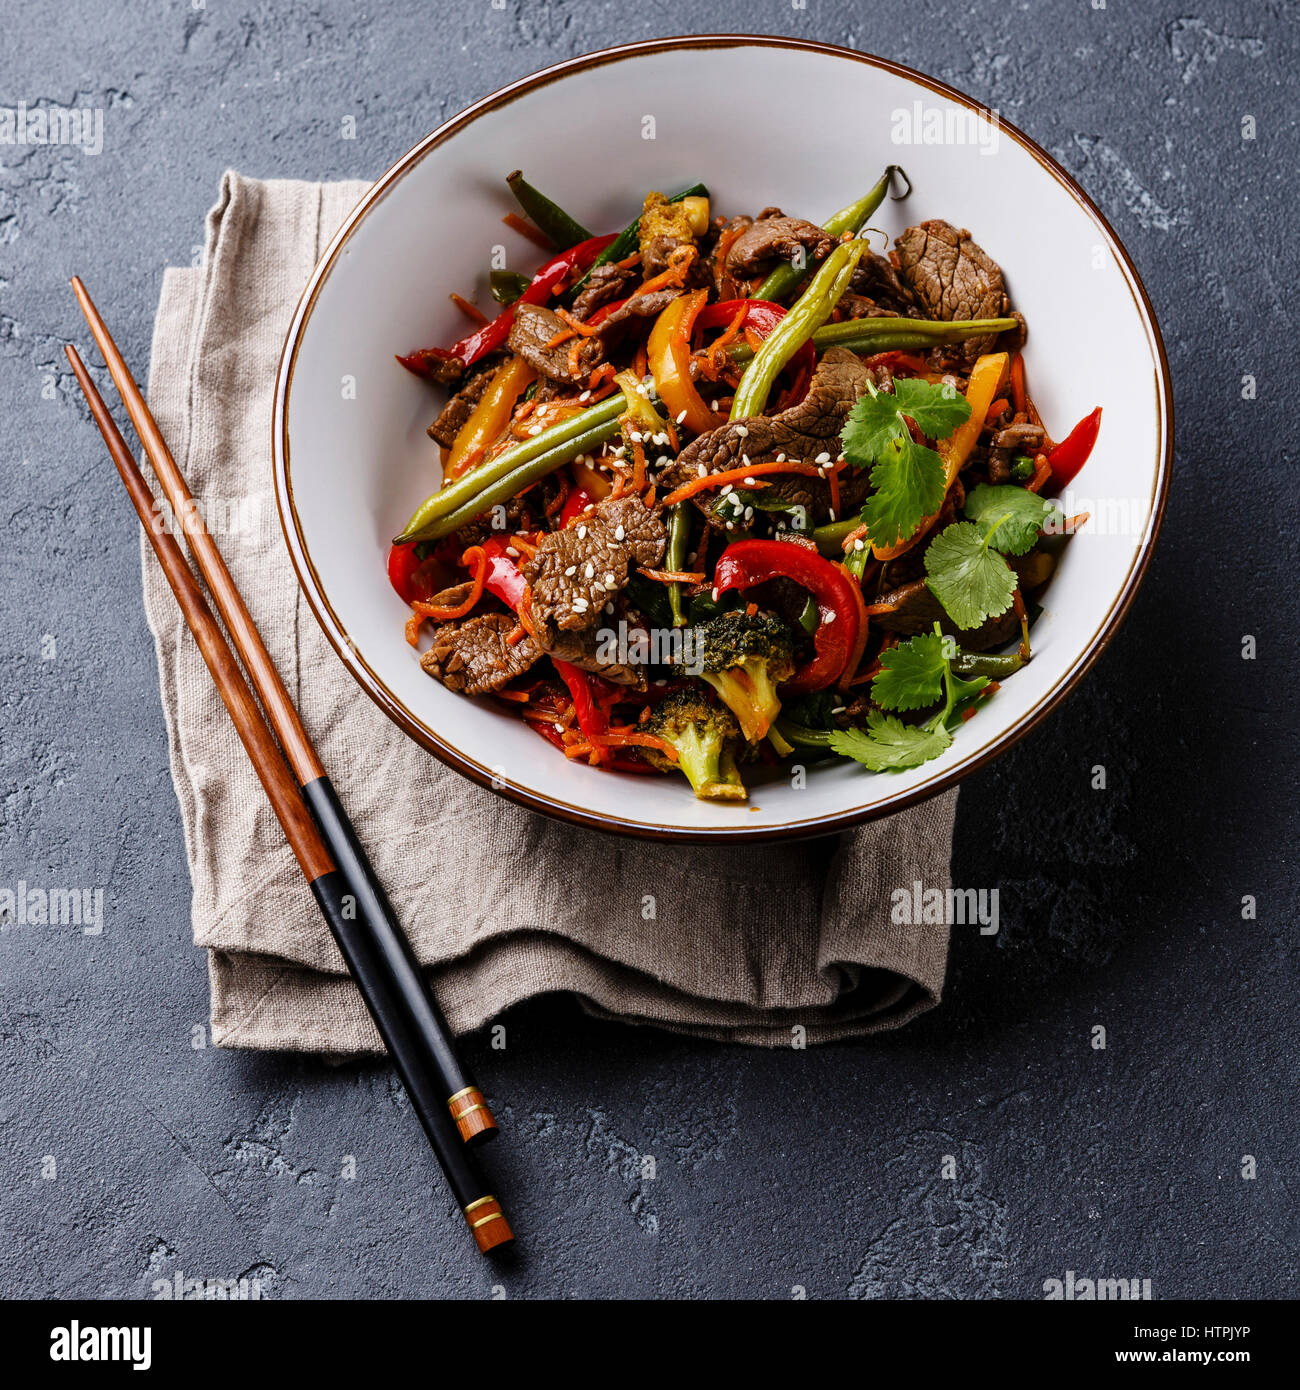 Carni bovine Szechuan stir fry con verdure nella ciotola in pietra scura sullo sfondo Foto Stock